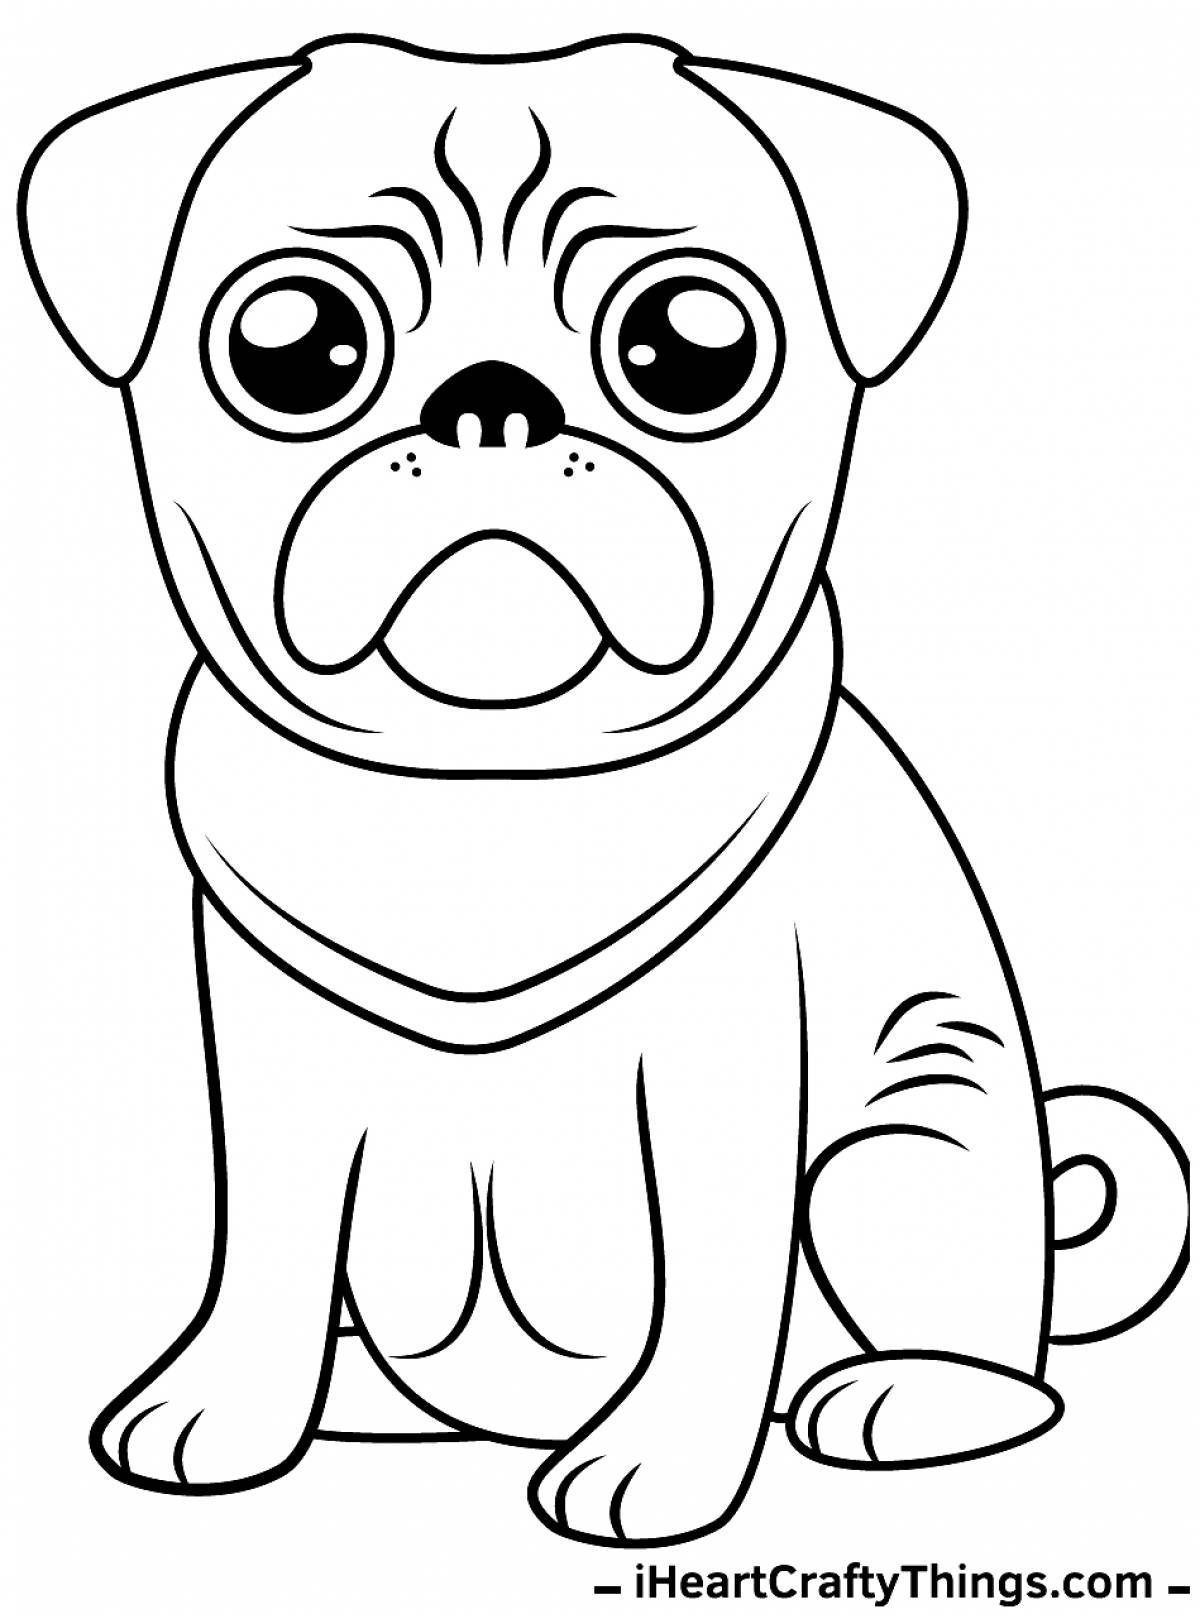 Cute cute dog coloring book